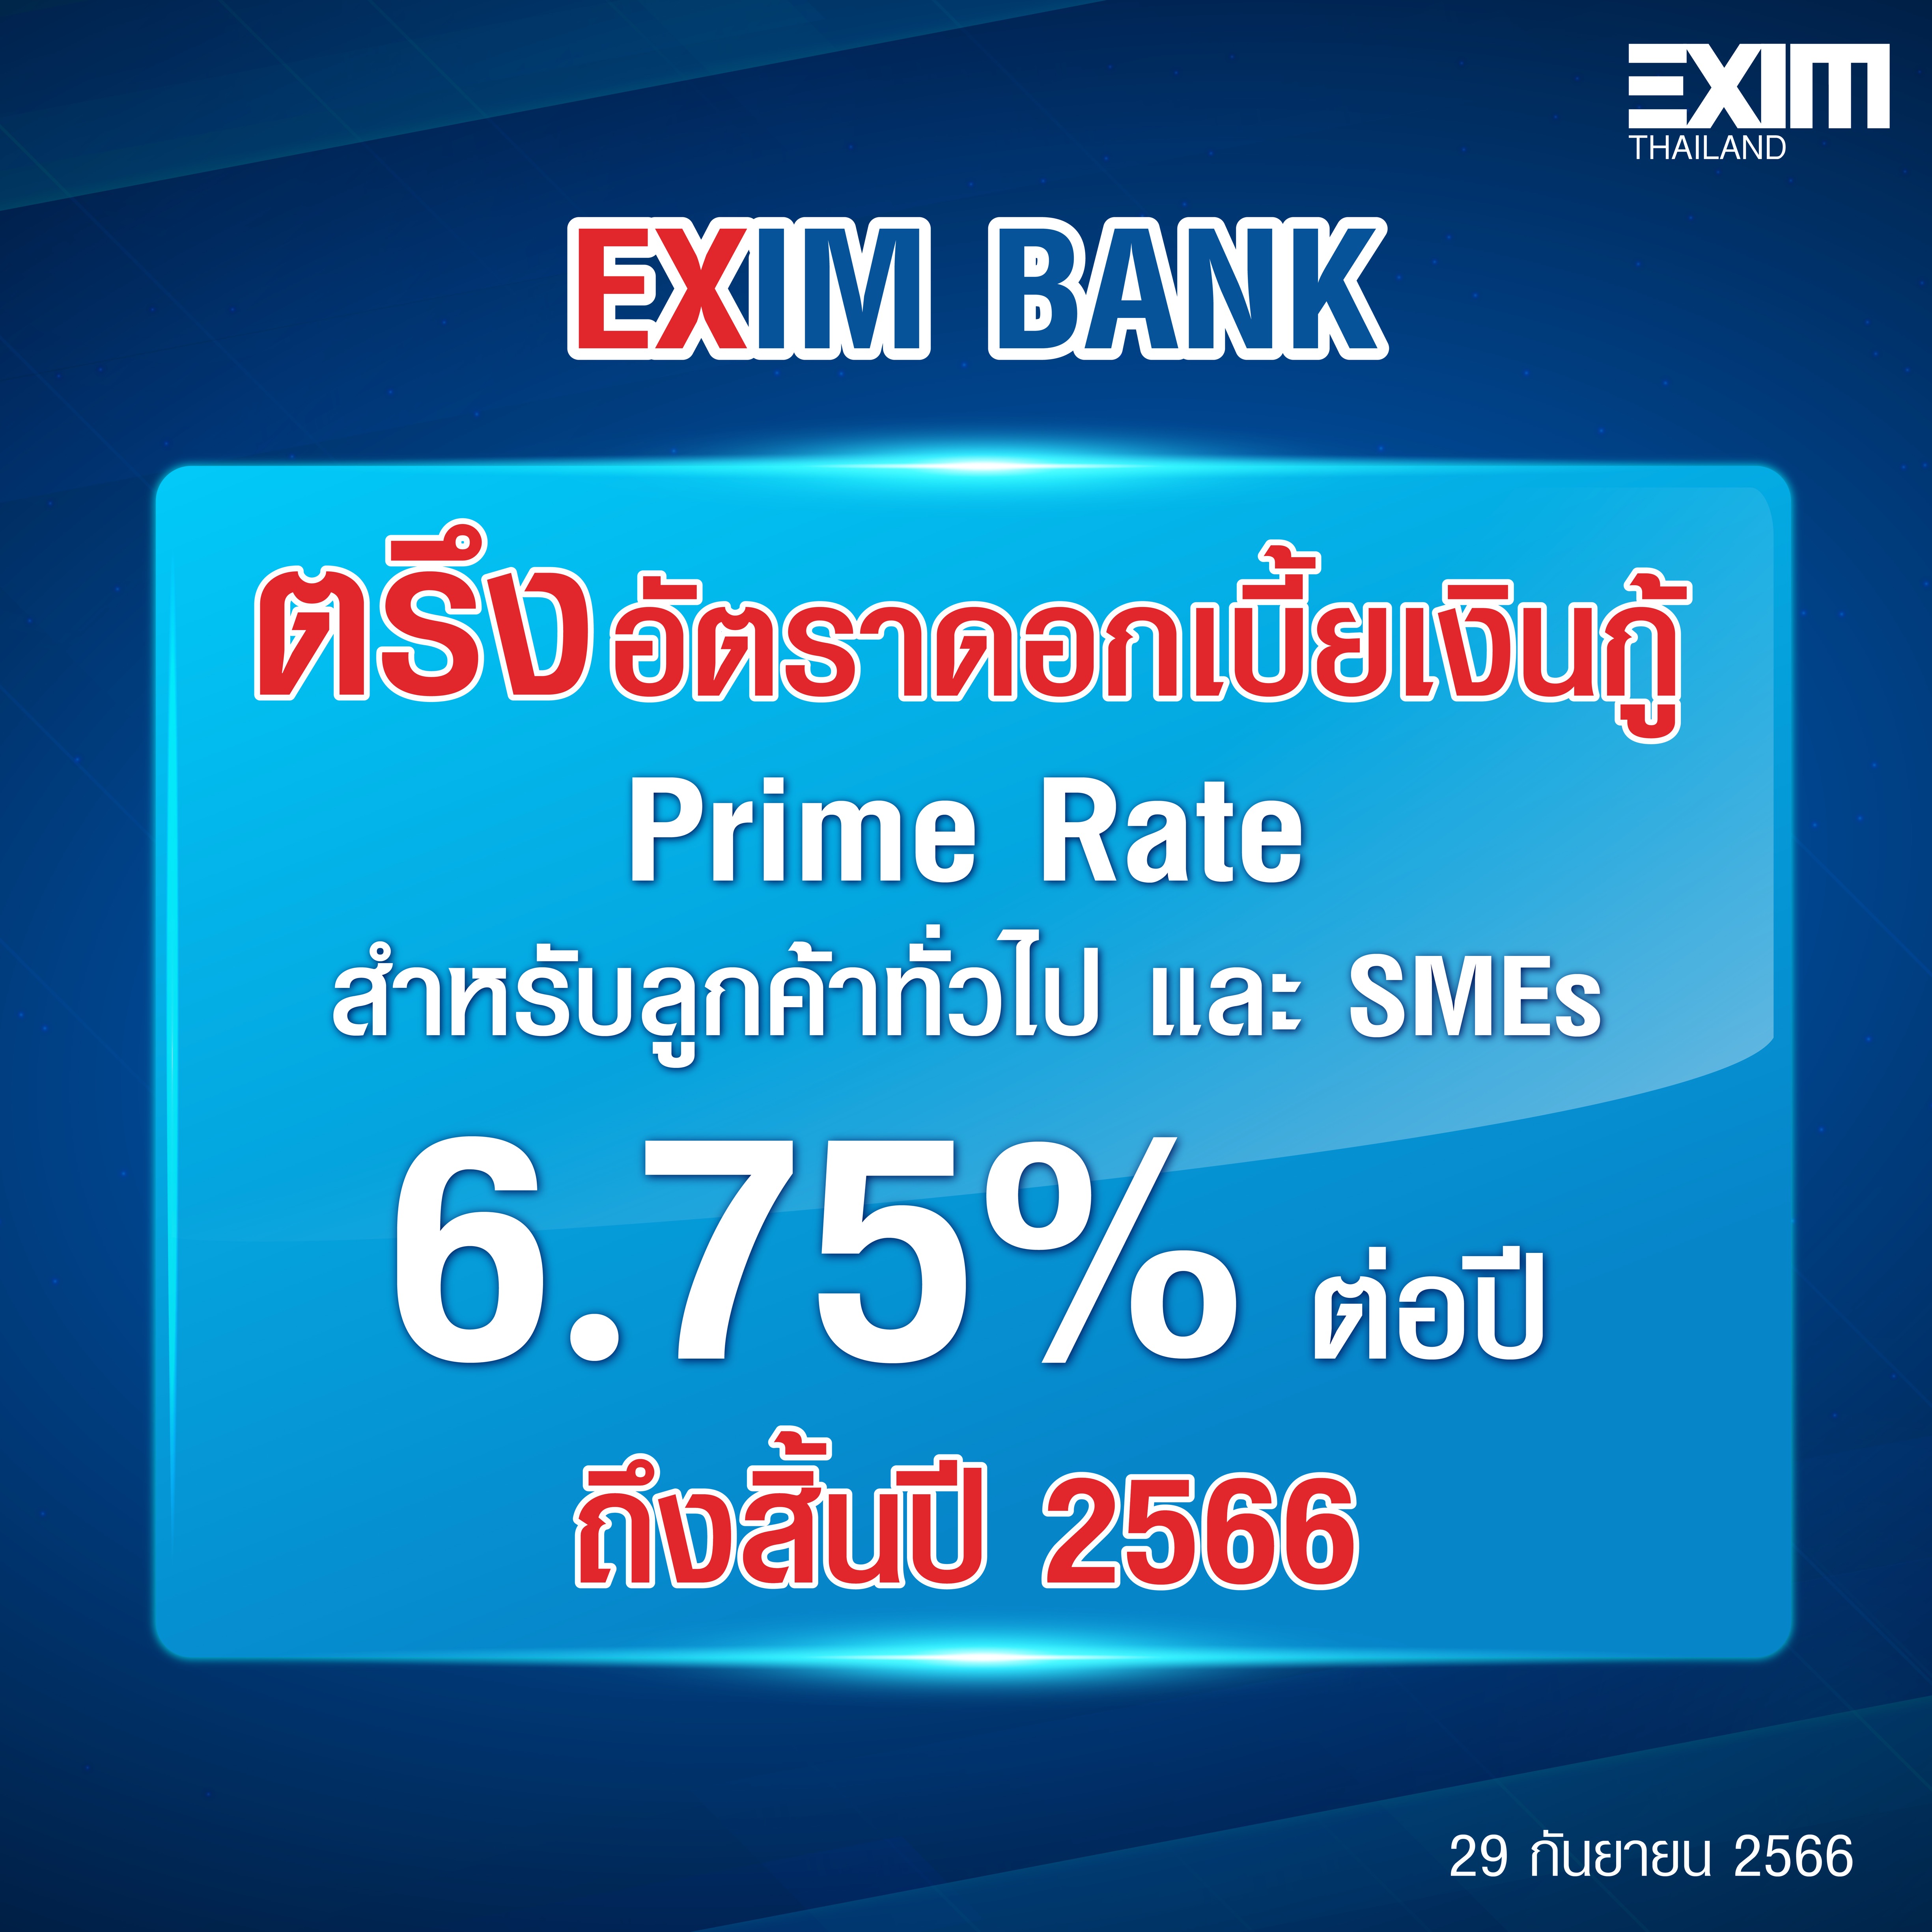 EXIM BANK ขานรับนโยบายคลัง ตรึงดอกเบี้ยเงินกู้ถึงสิ้นปีนี้